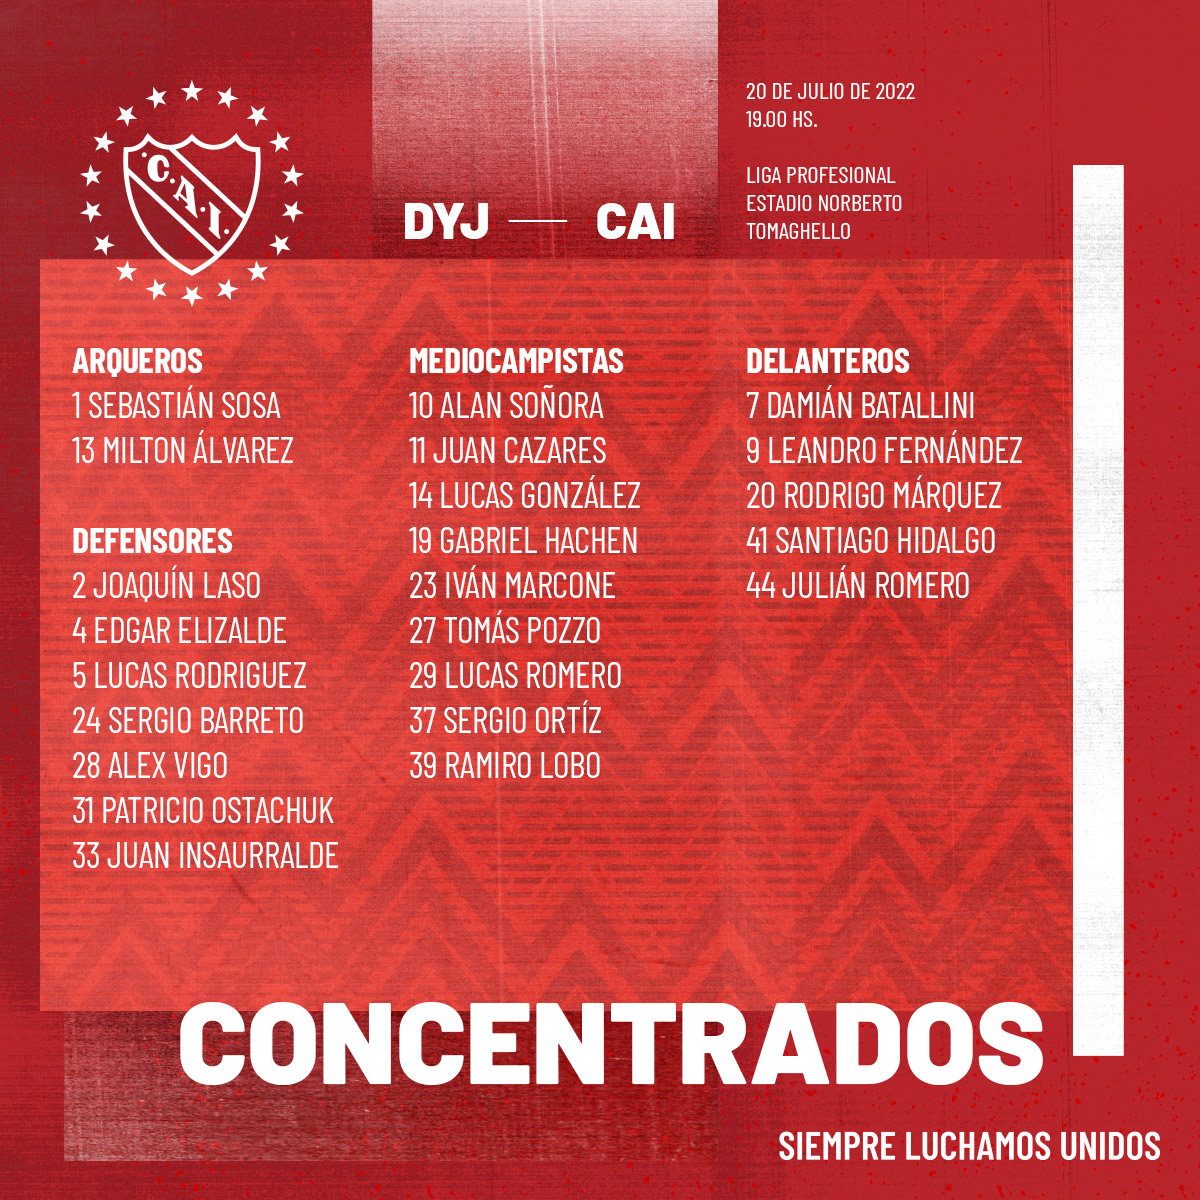 Estos son los jugadores que citó el entrenador de Independiente.